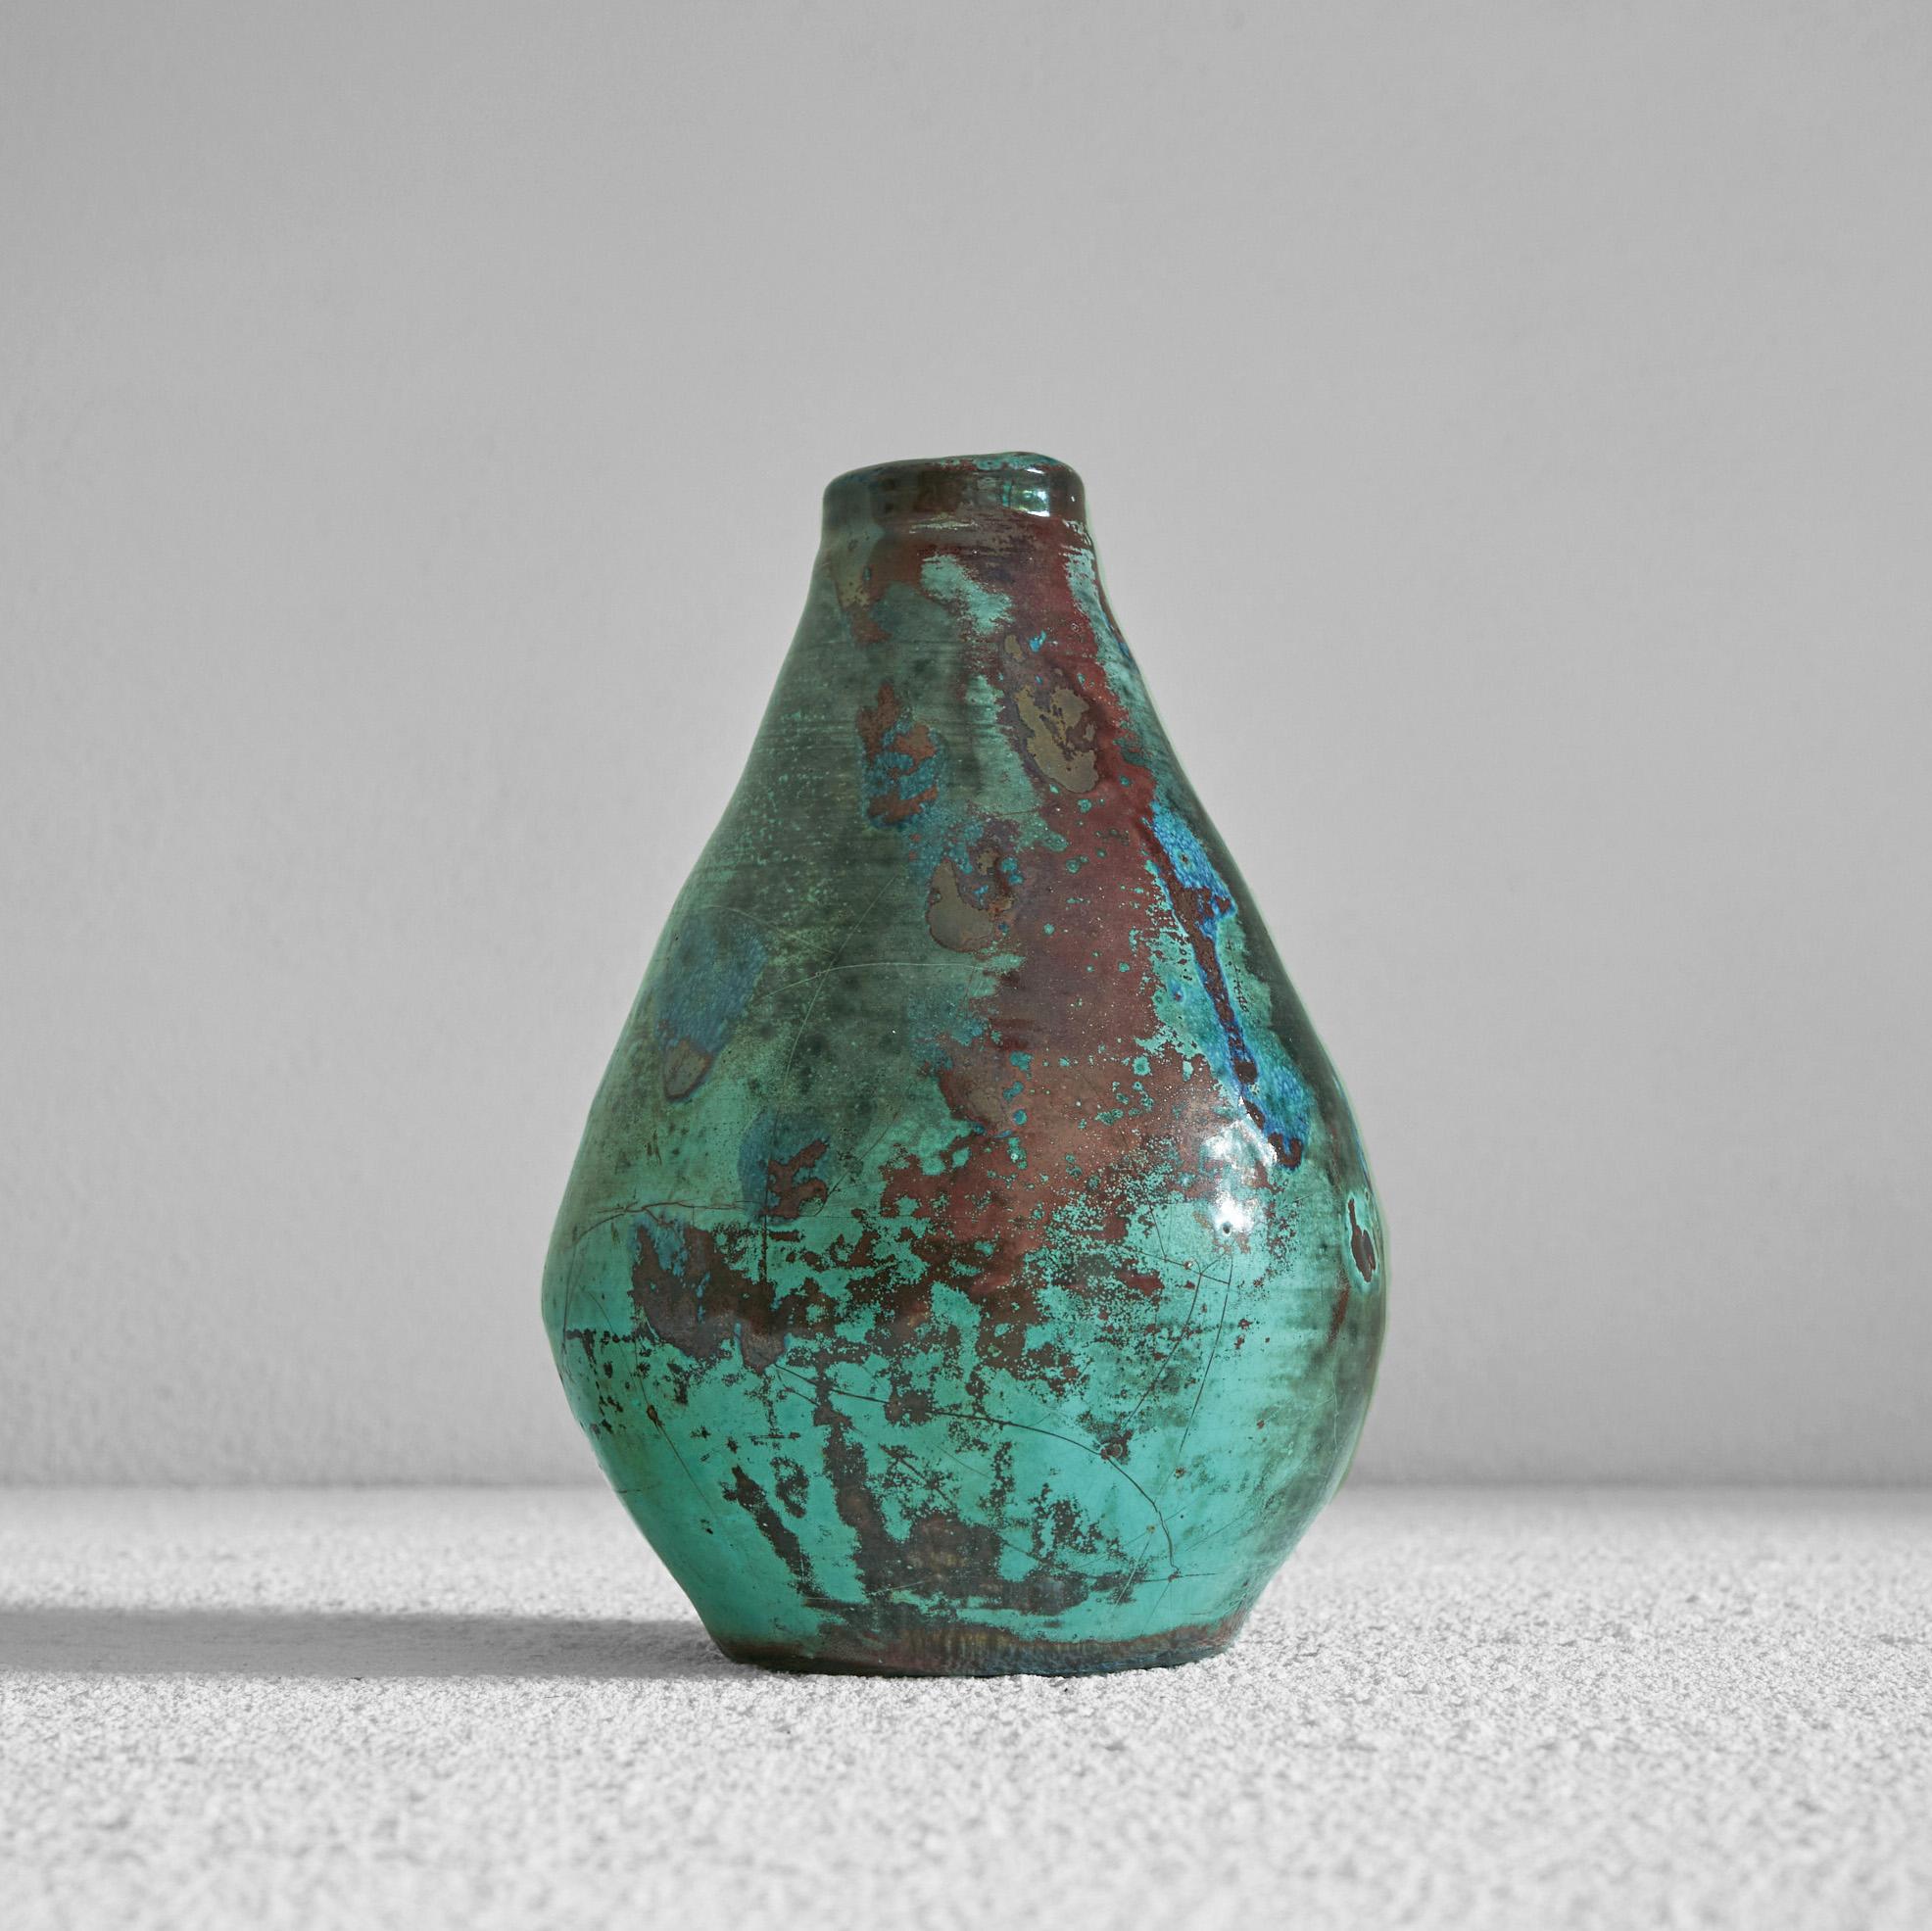 Vase expressionniste en poterie émaillée. Début du 20e siècle. 

Il s'agit d'un superbe vase en poterie du début du 20e siècle avec une glaçure très colorée et expressionniste. Des couleurs changeantes étonnantes qui font de ce vase un véritable